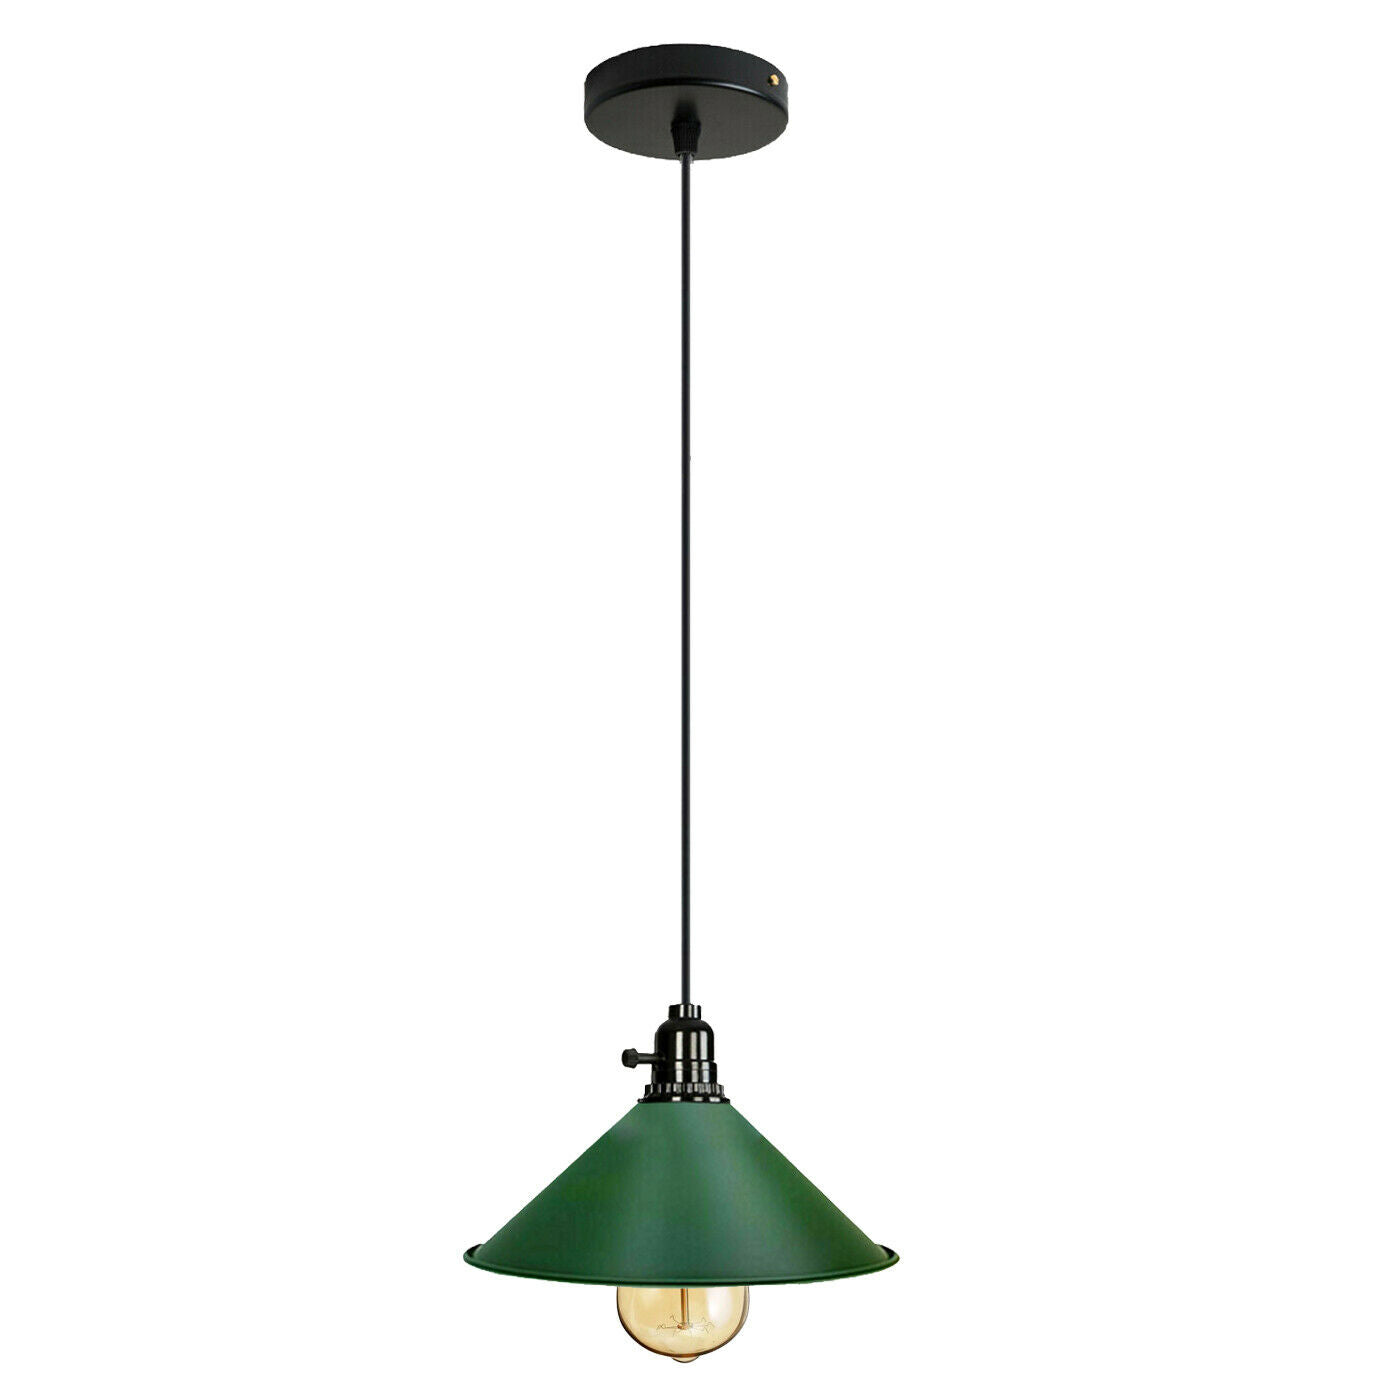 Vintage Industrial Metal Ceiling Pendant Shade Modern Hanging Retro Lights~2056 - LEDSone UK Ltd